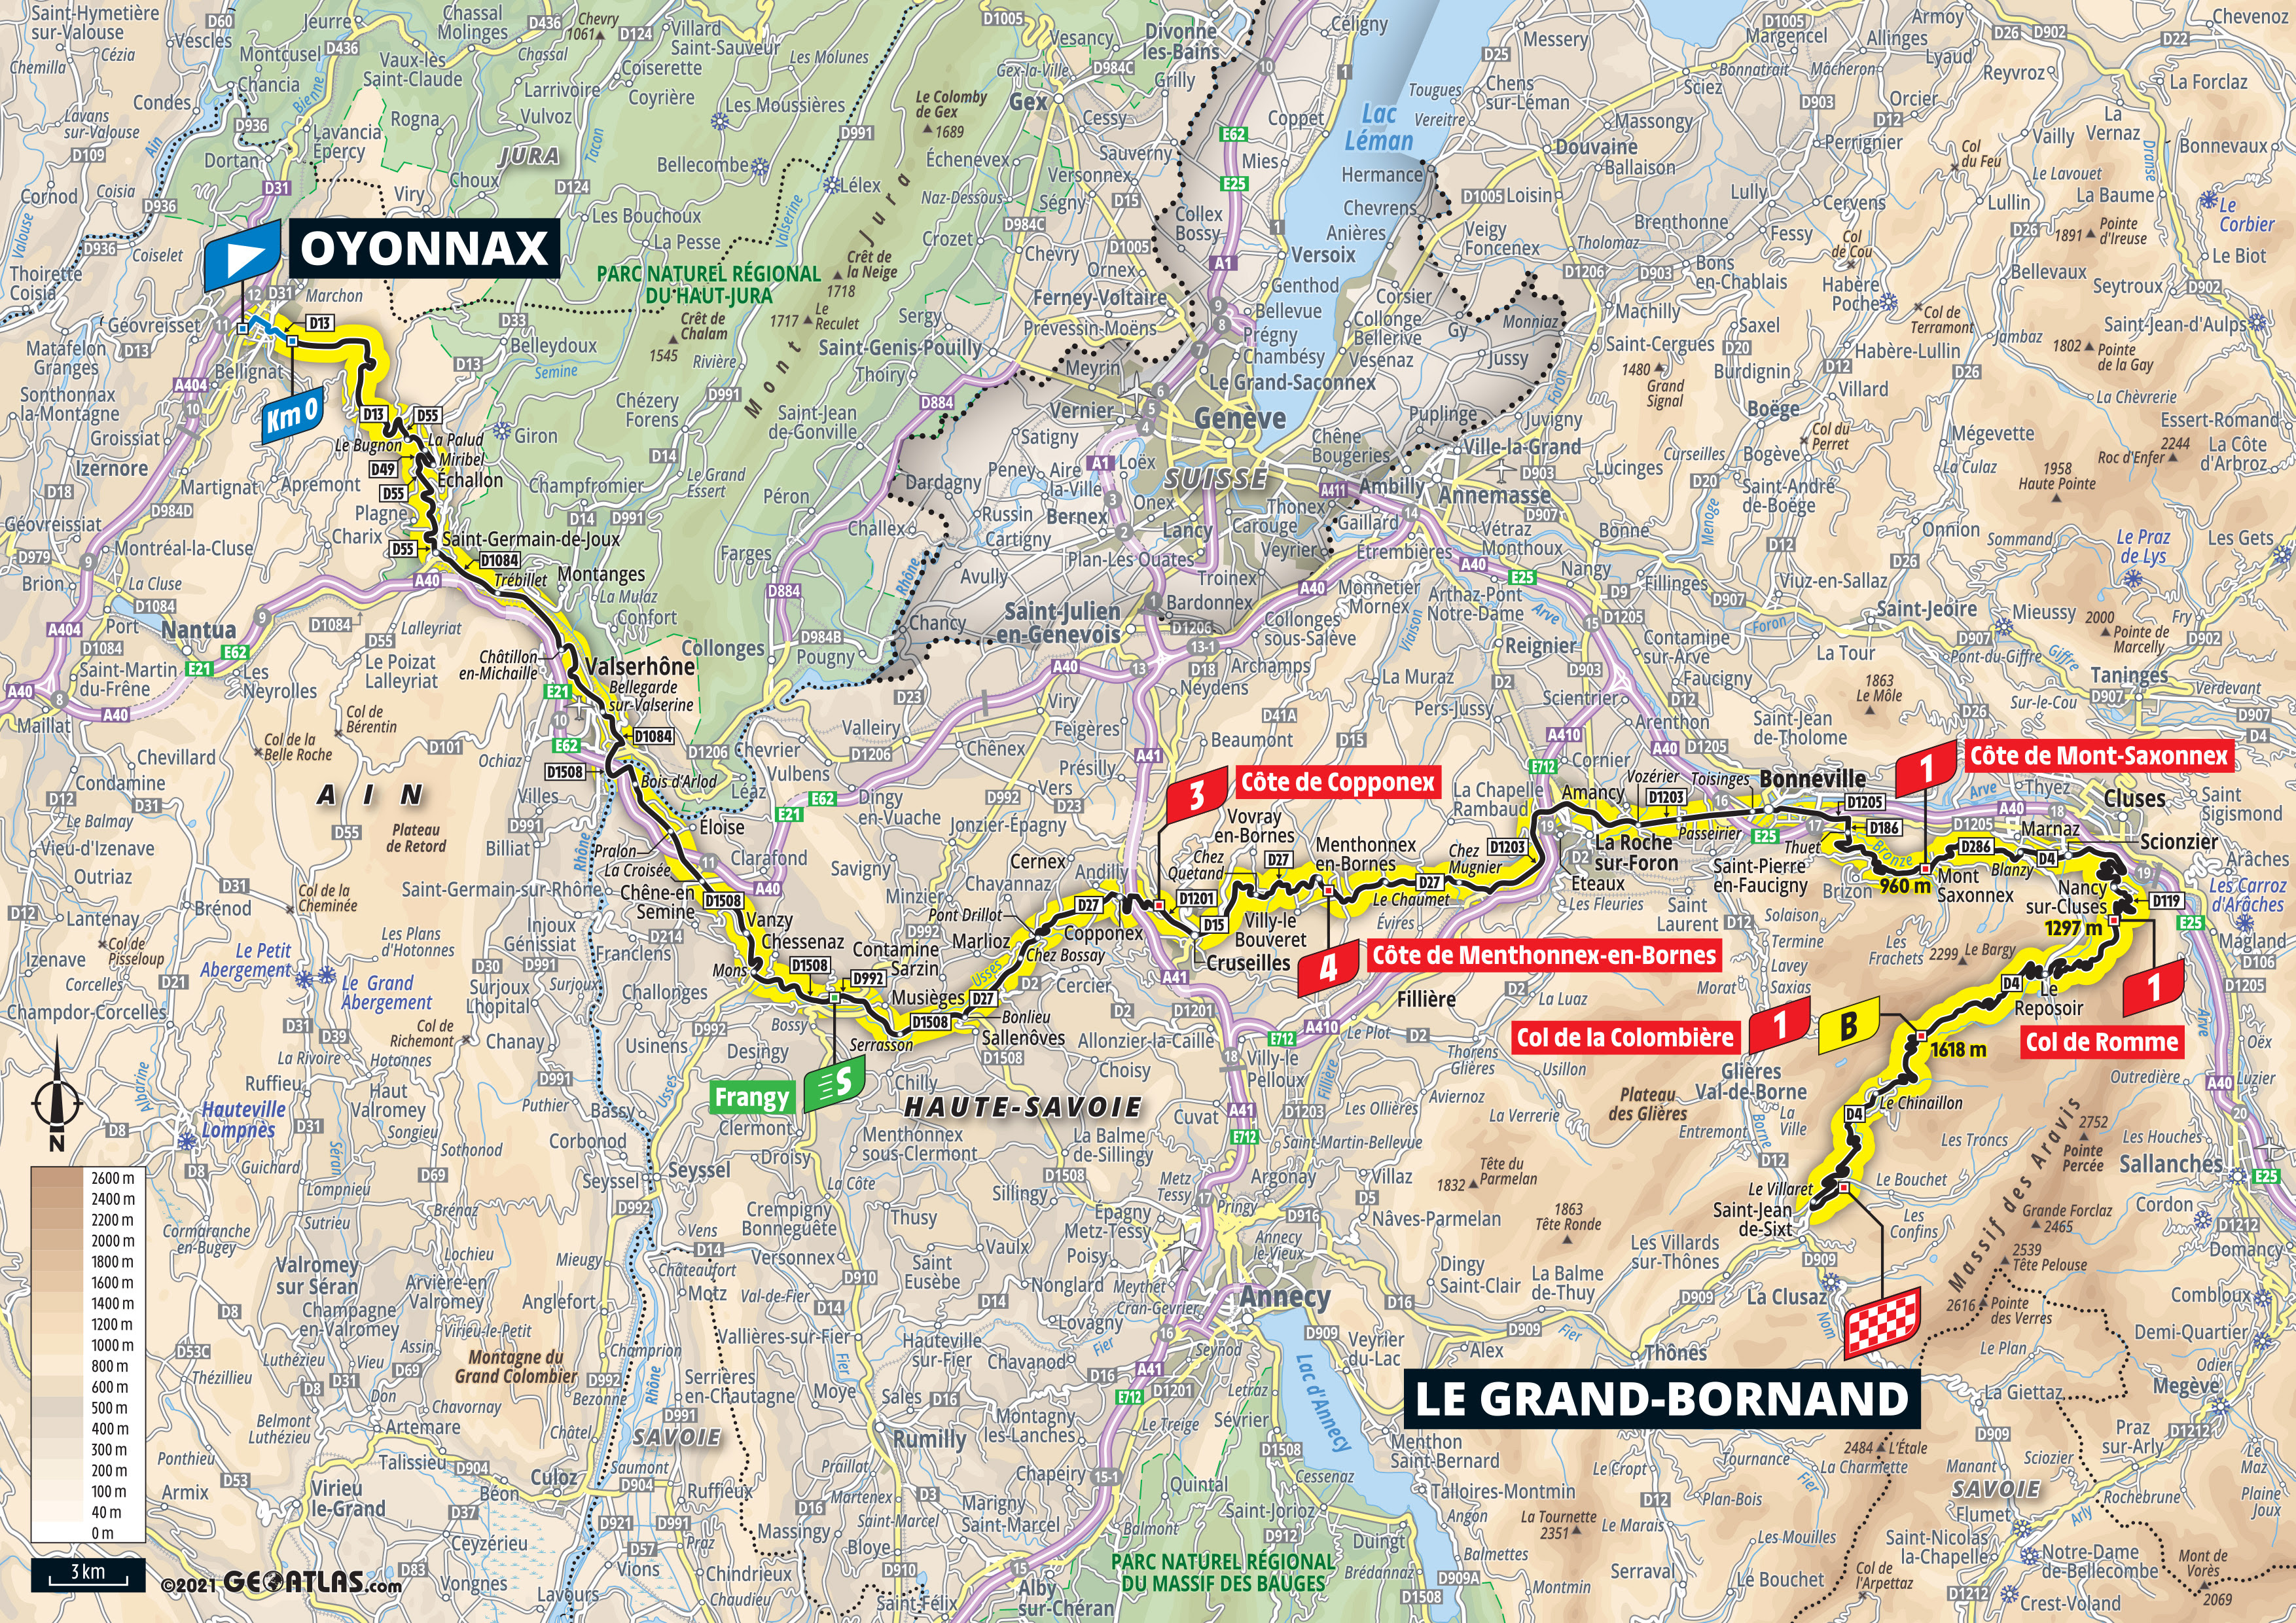 El recorrido del tour de france, las etapas, las ciudades, las fechas. 2021 Tour De France Live Video Route Photos Results Previews Tv Startlist